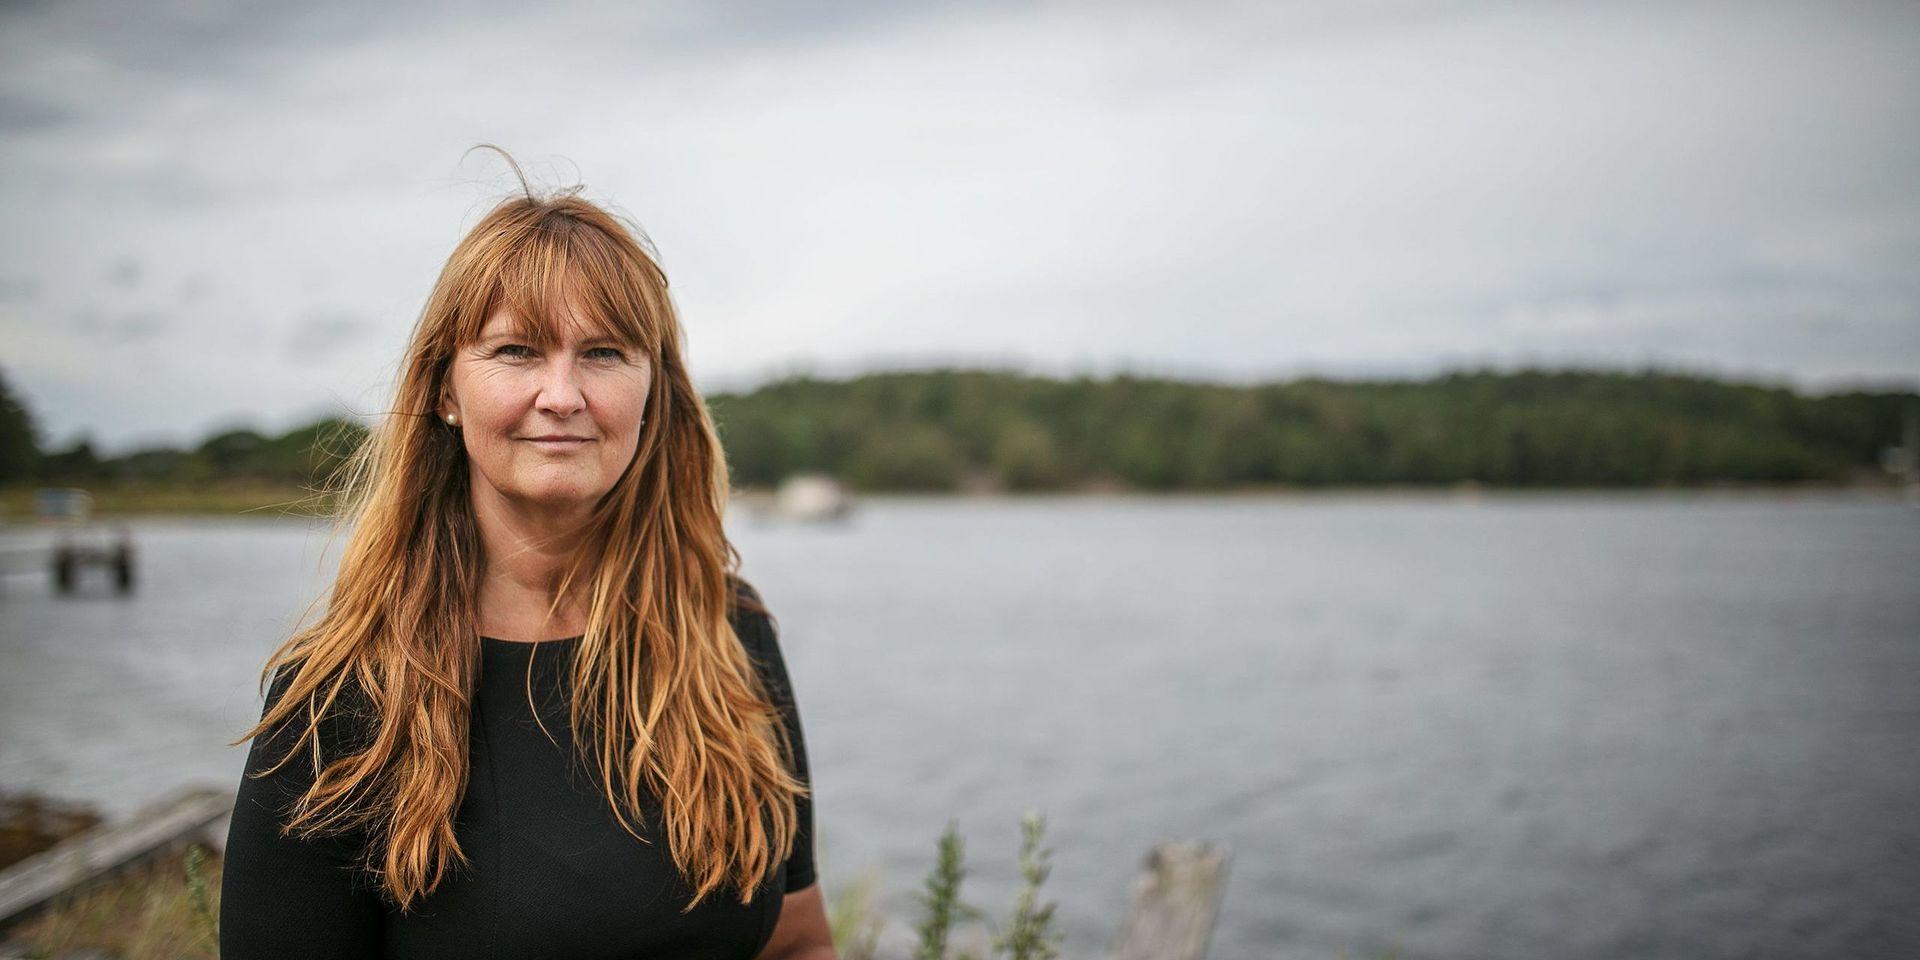 Linda Gjerdrum är VD för Uddevalla Turism AB, och är med och driver den förstudie som nu pågår om trafikbehov på vatten i framtiden. 